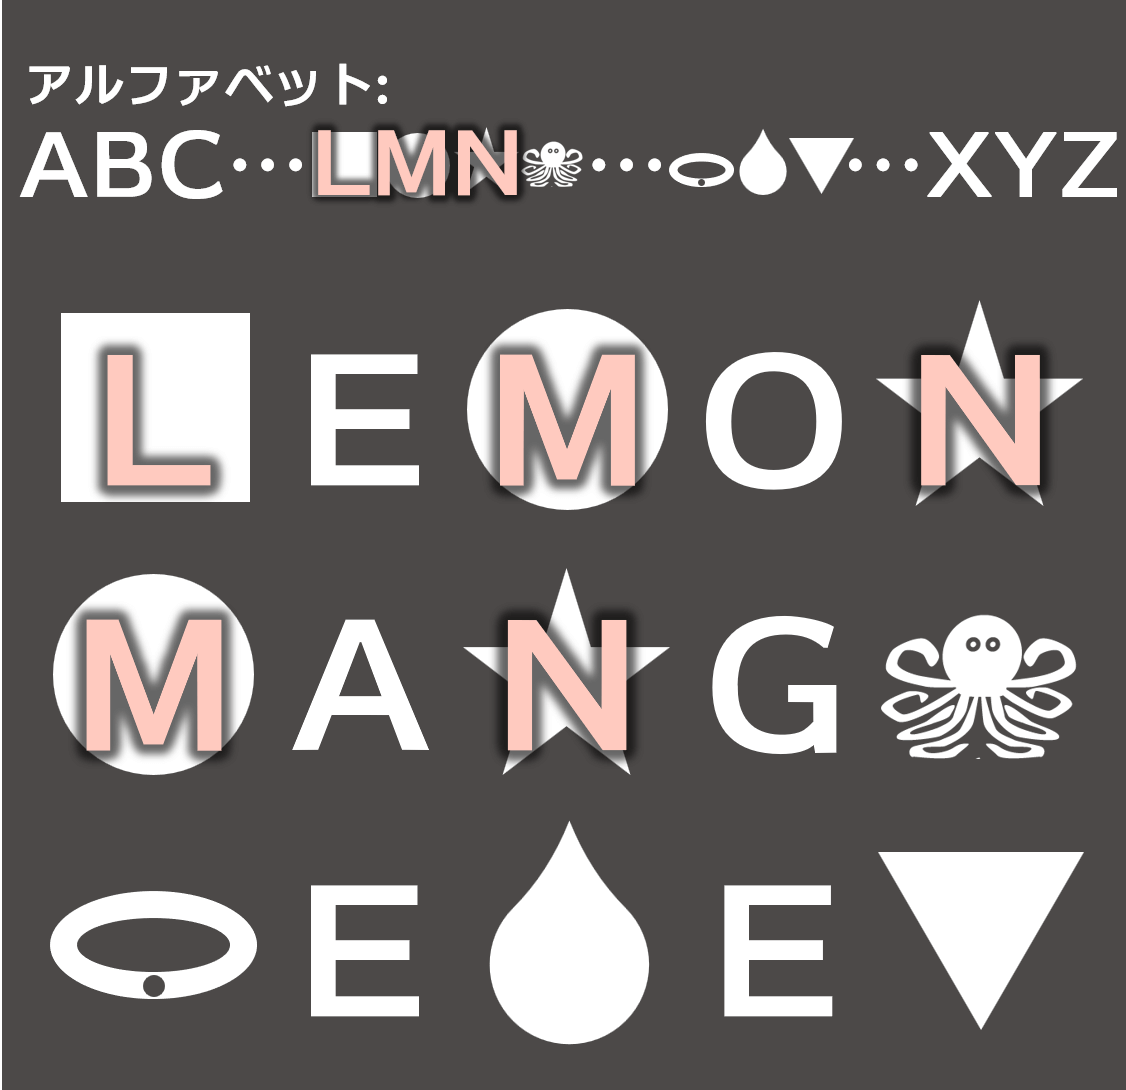 lemon and mango